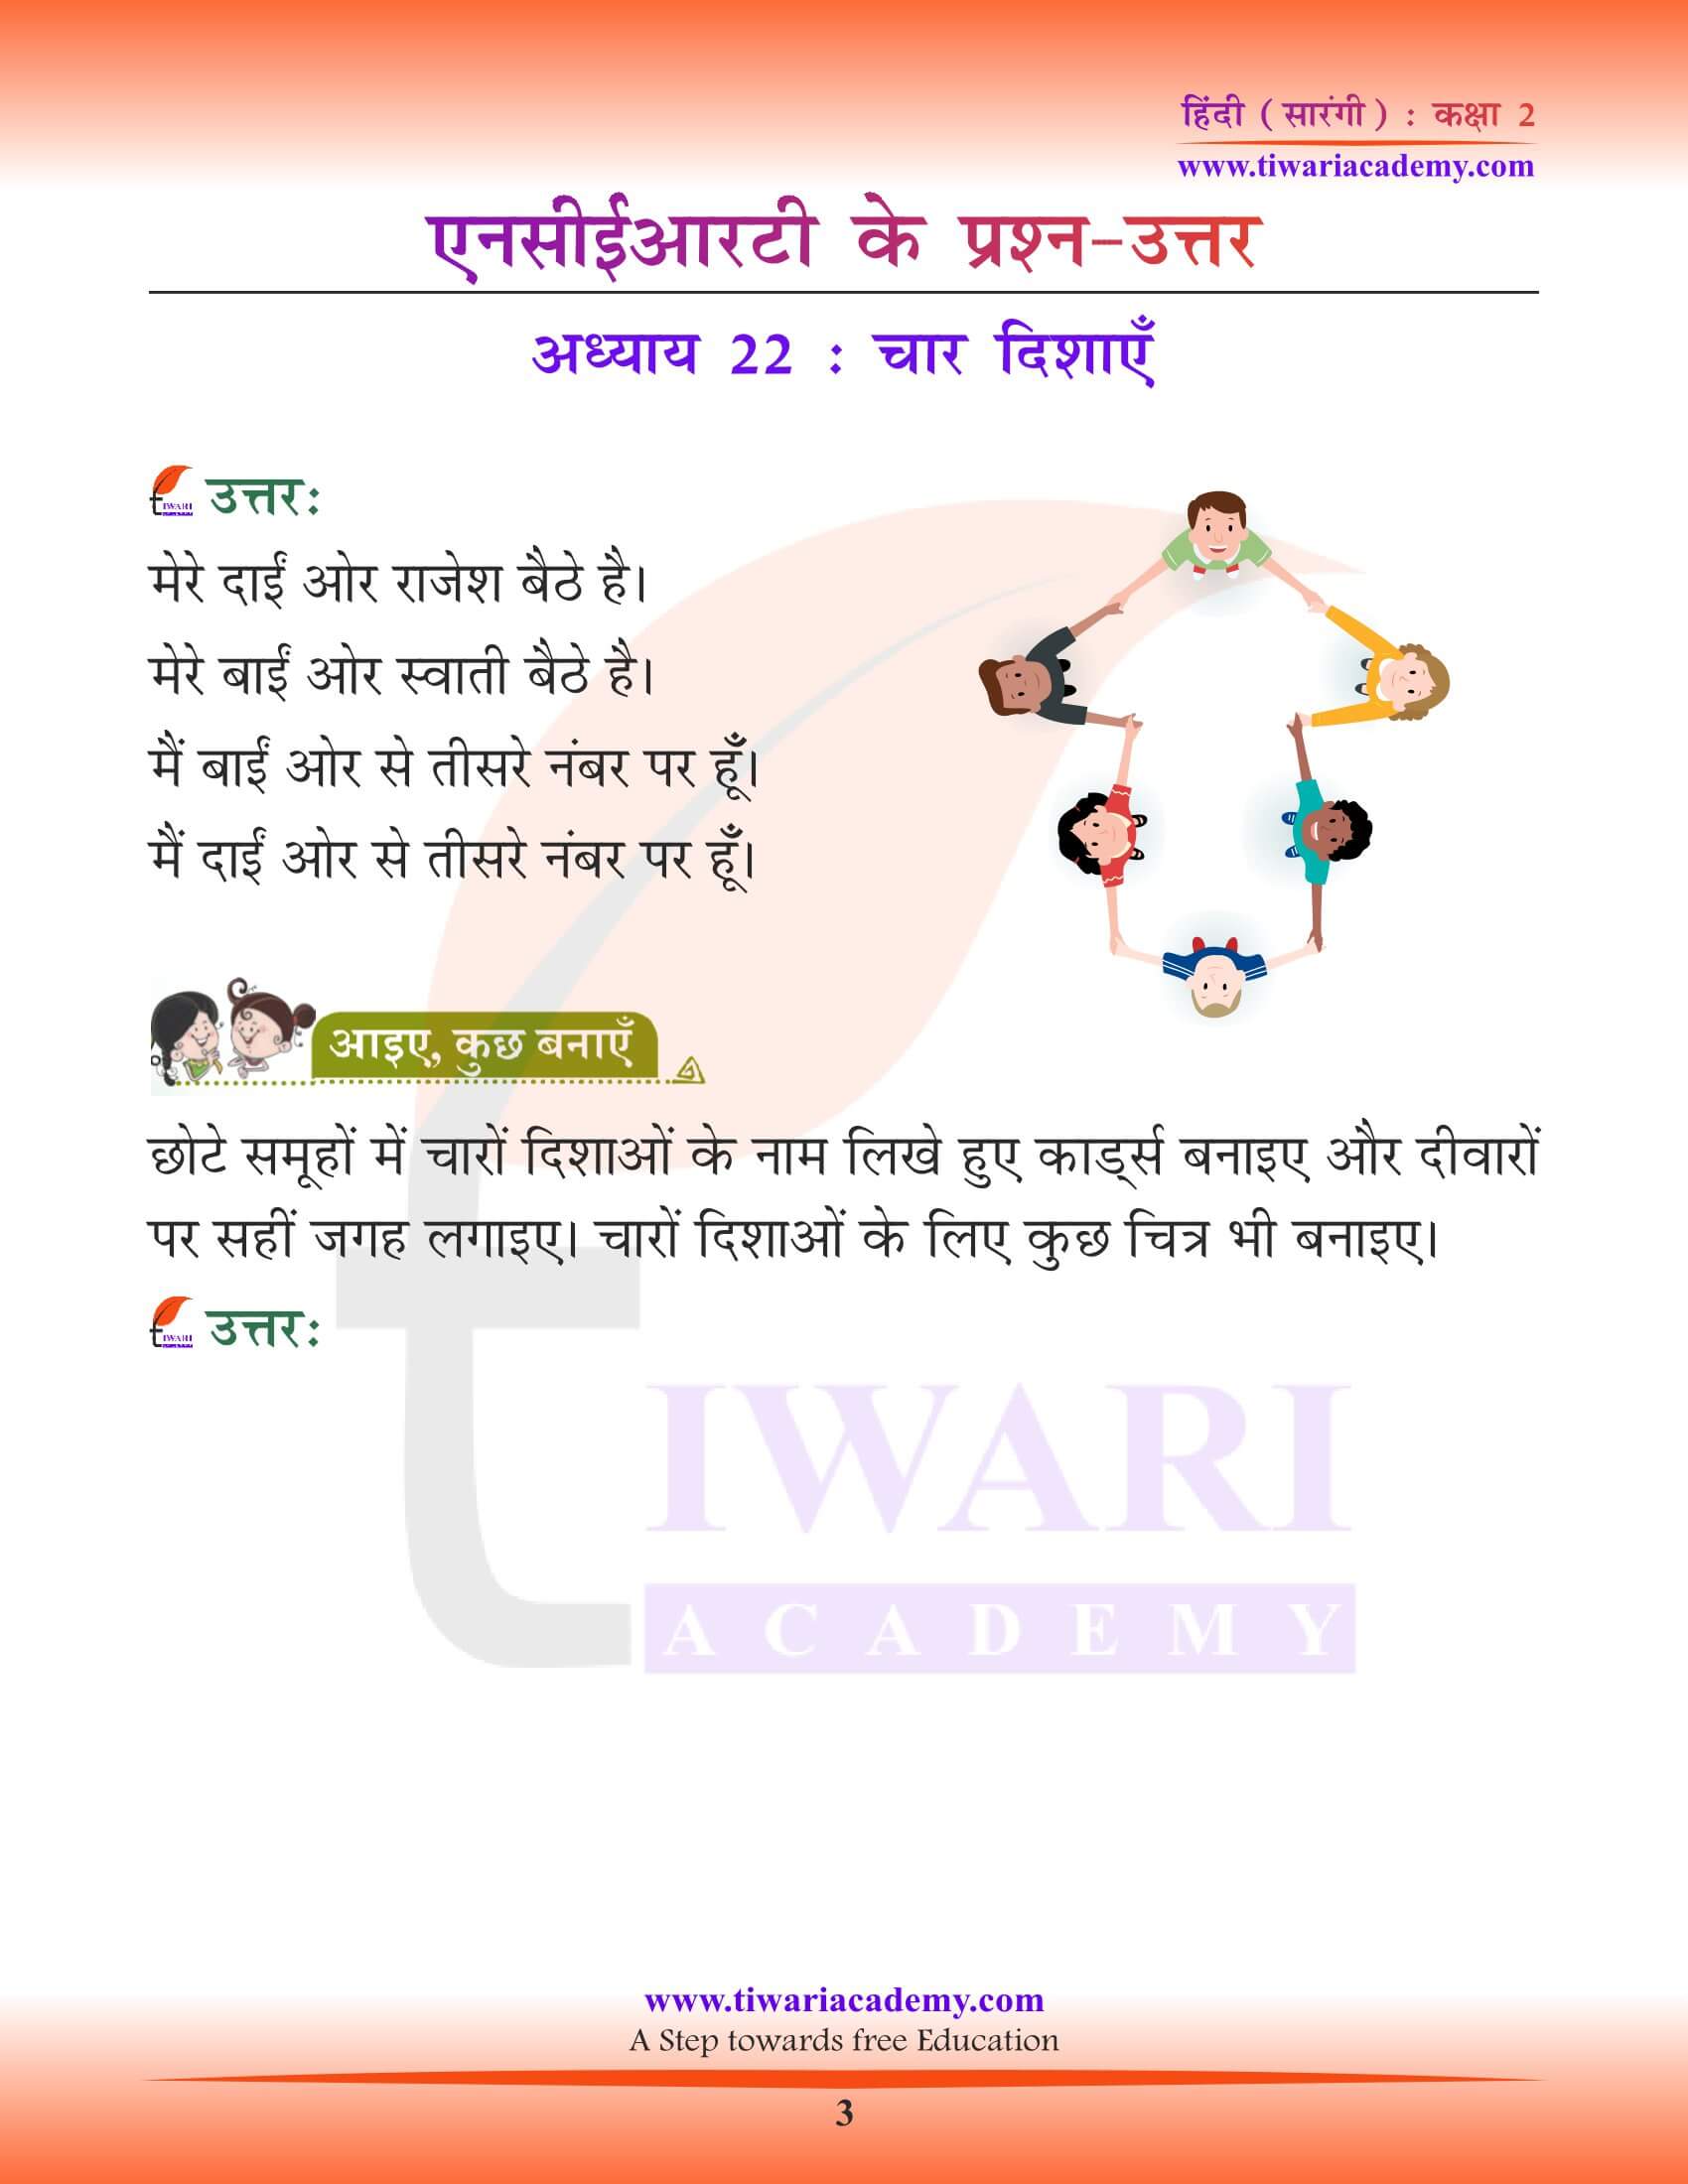 कक्षा 2 हिंदी सारंगी अध्याय 22 चार दिशाएँ